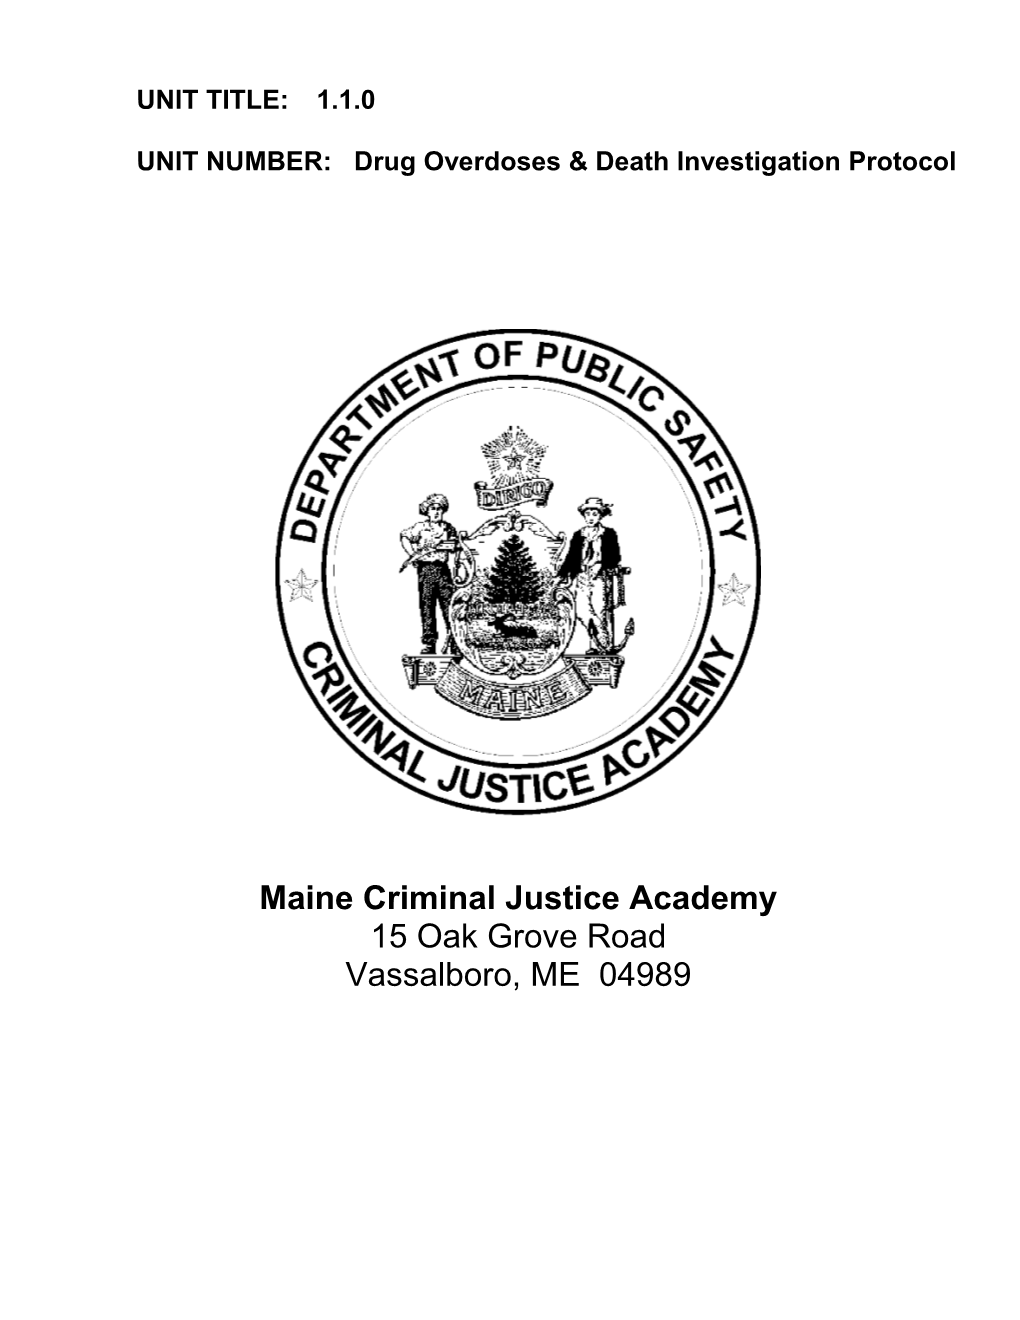 UNIT NUMBER: Drug Overdoses & Death Investigation Protocol